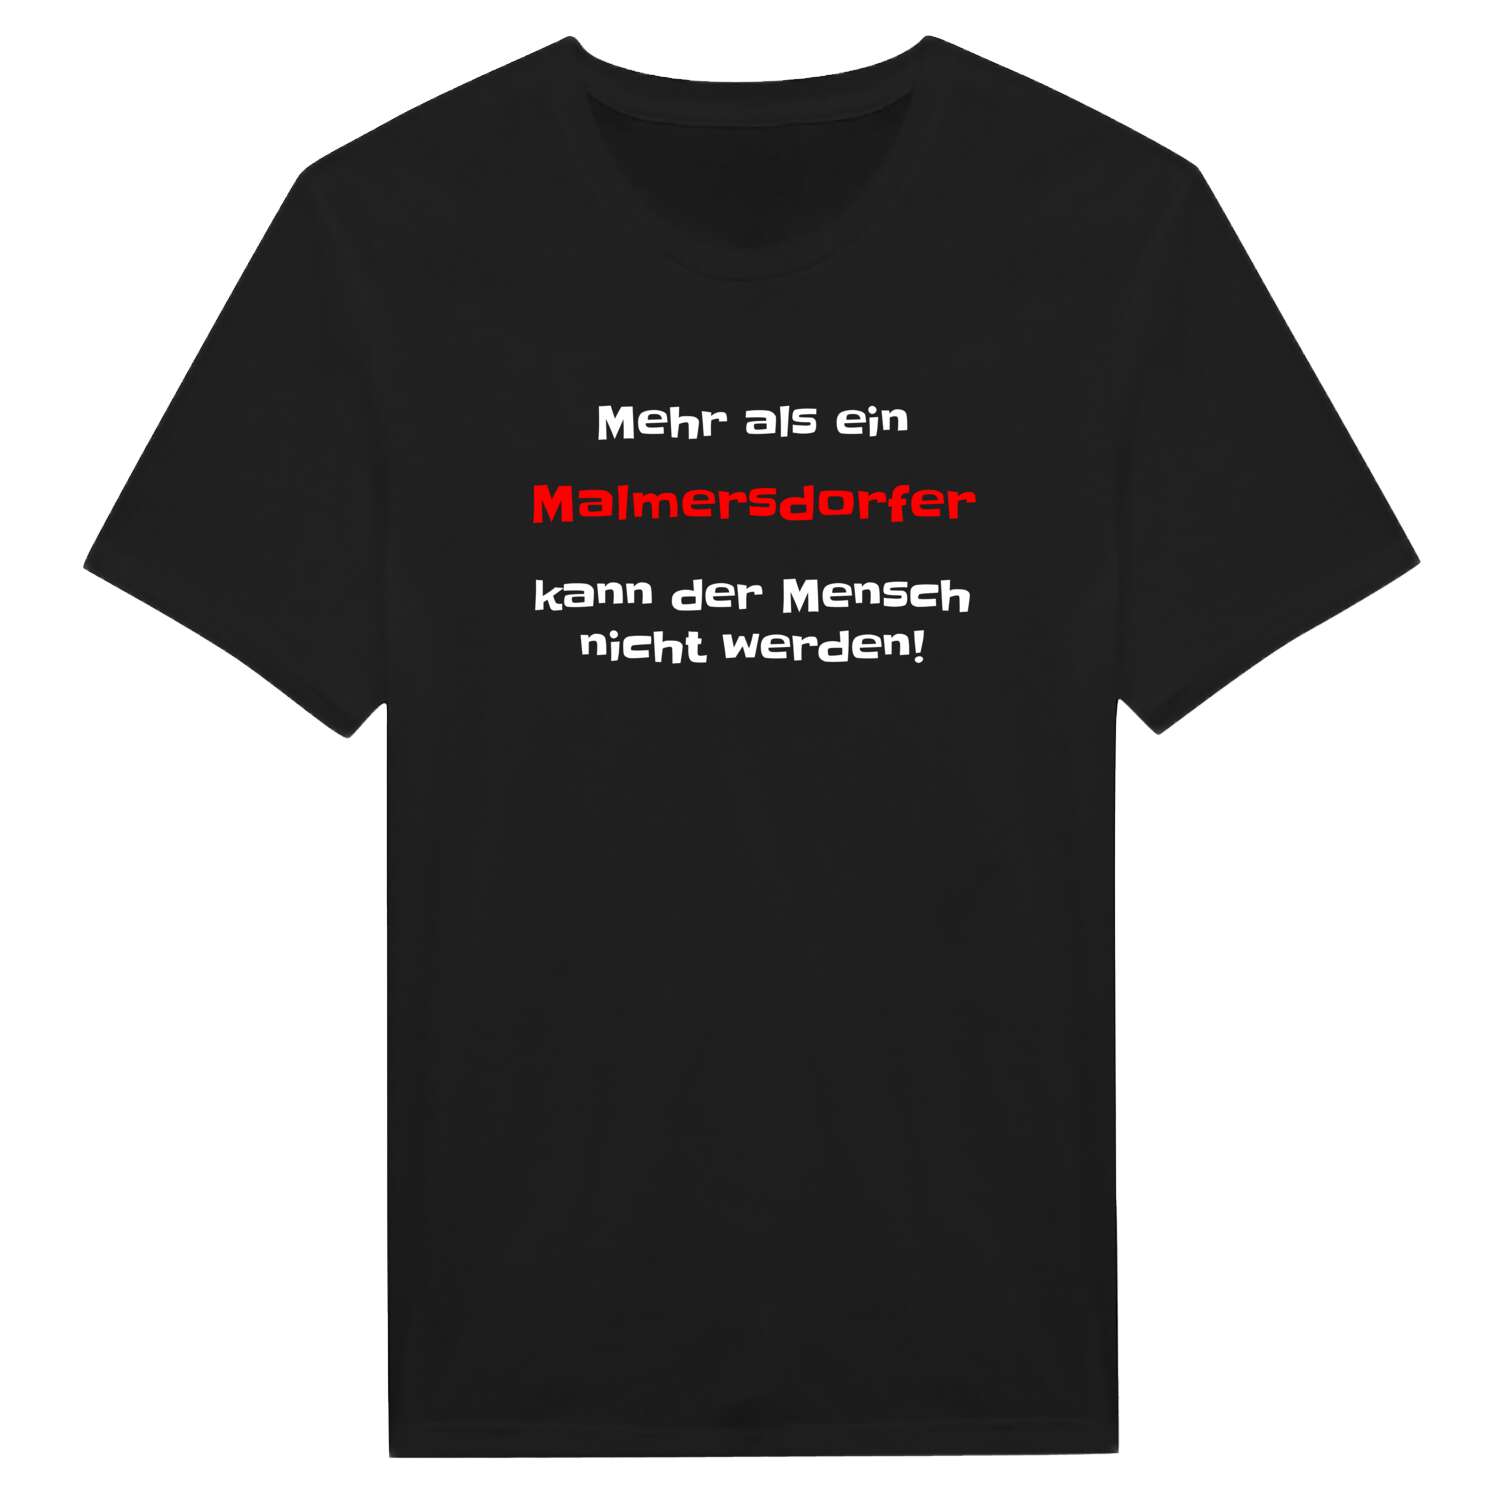 Malmersdorf T-Shirt »Mehr als ein«